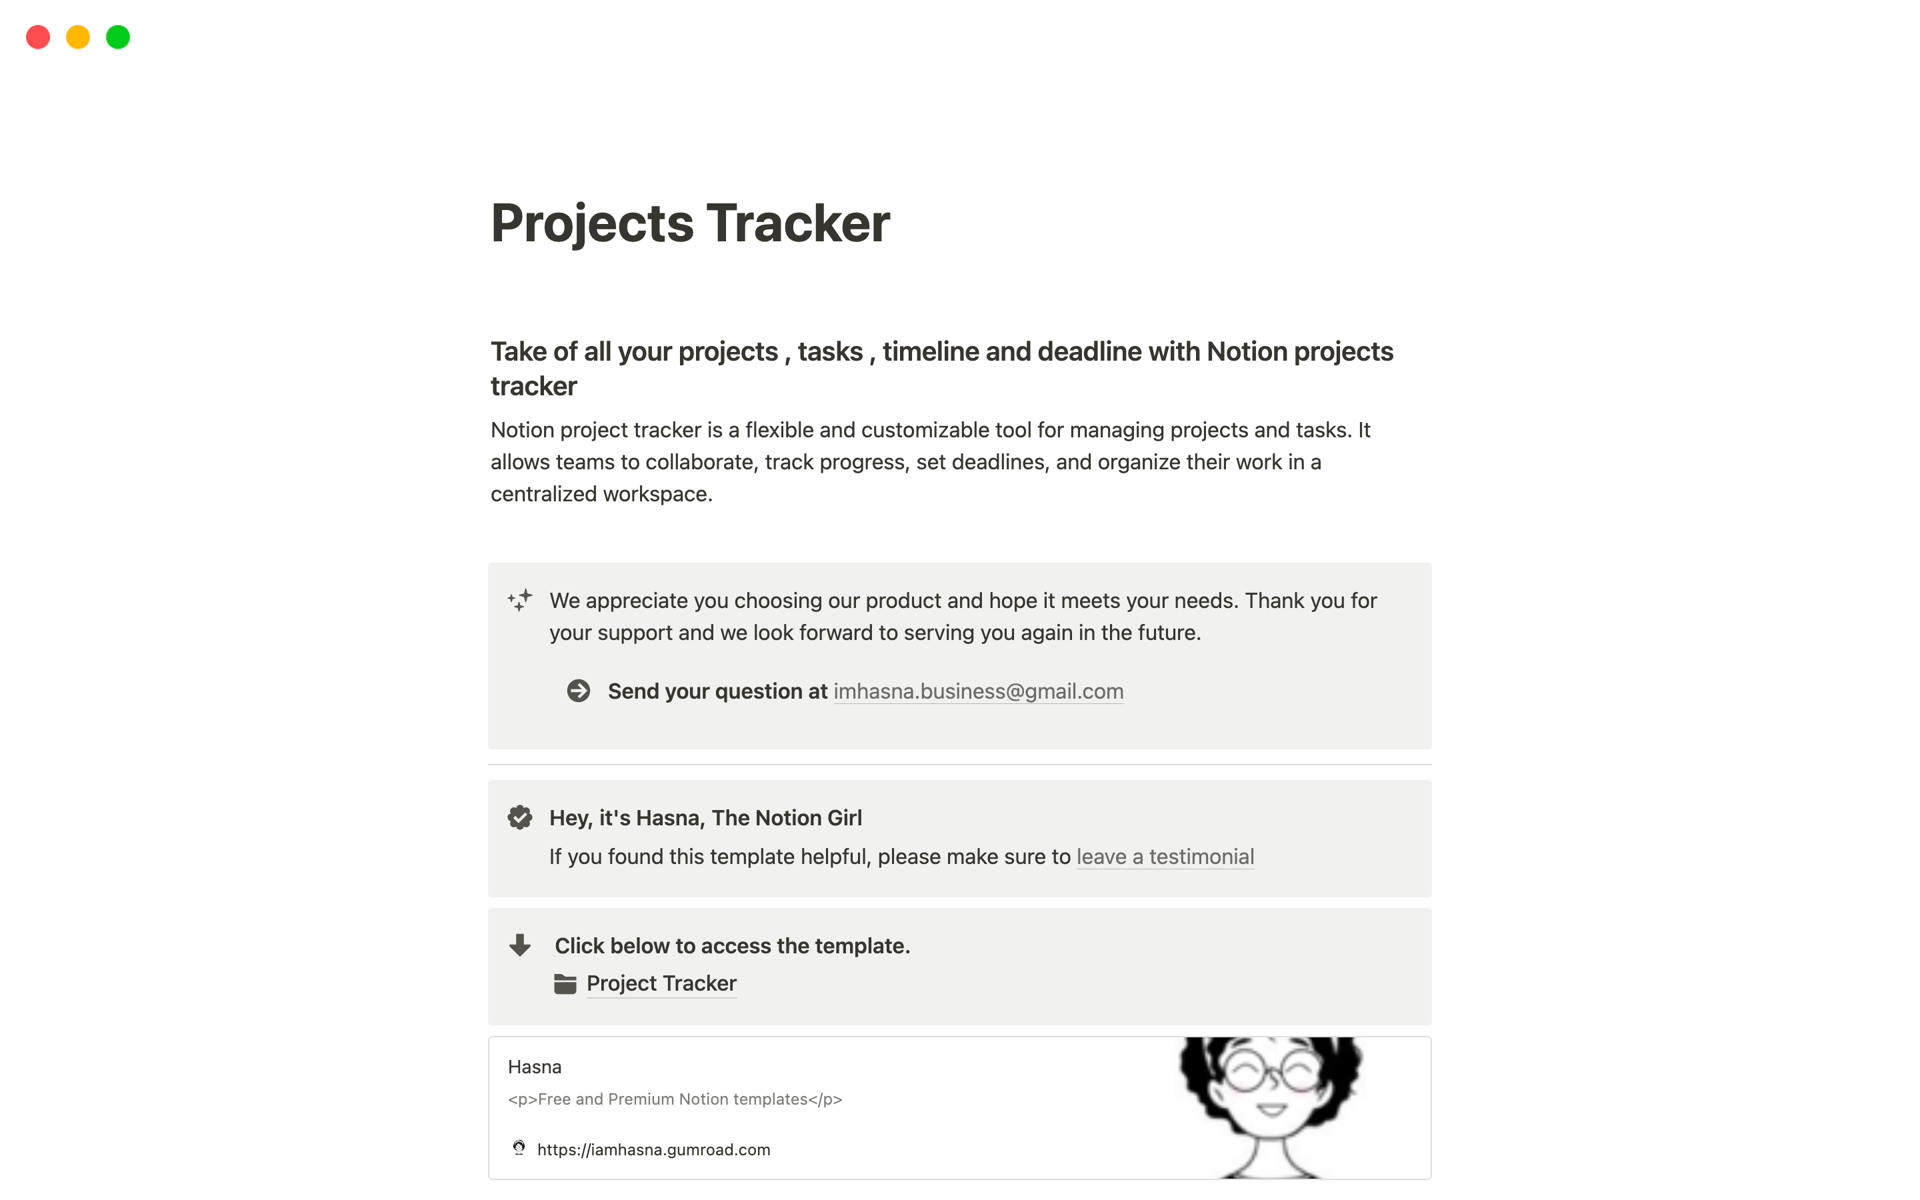 Vista previa de plantilla para Projects Tracker